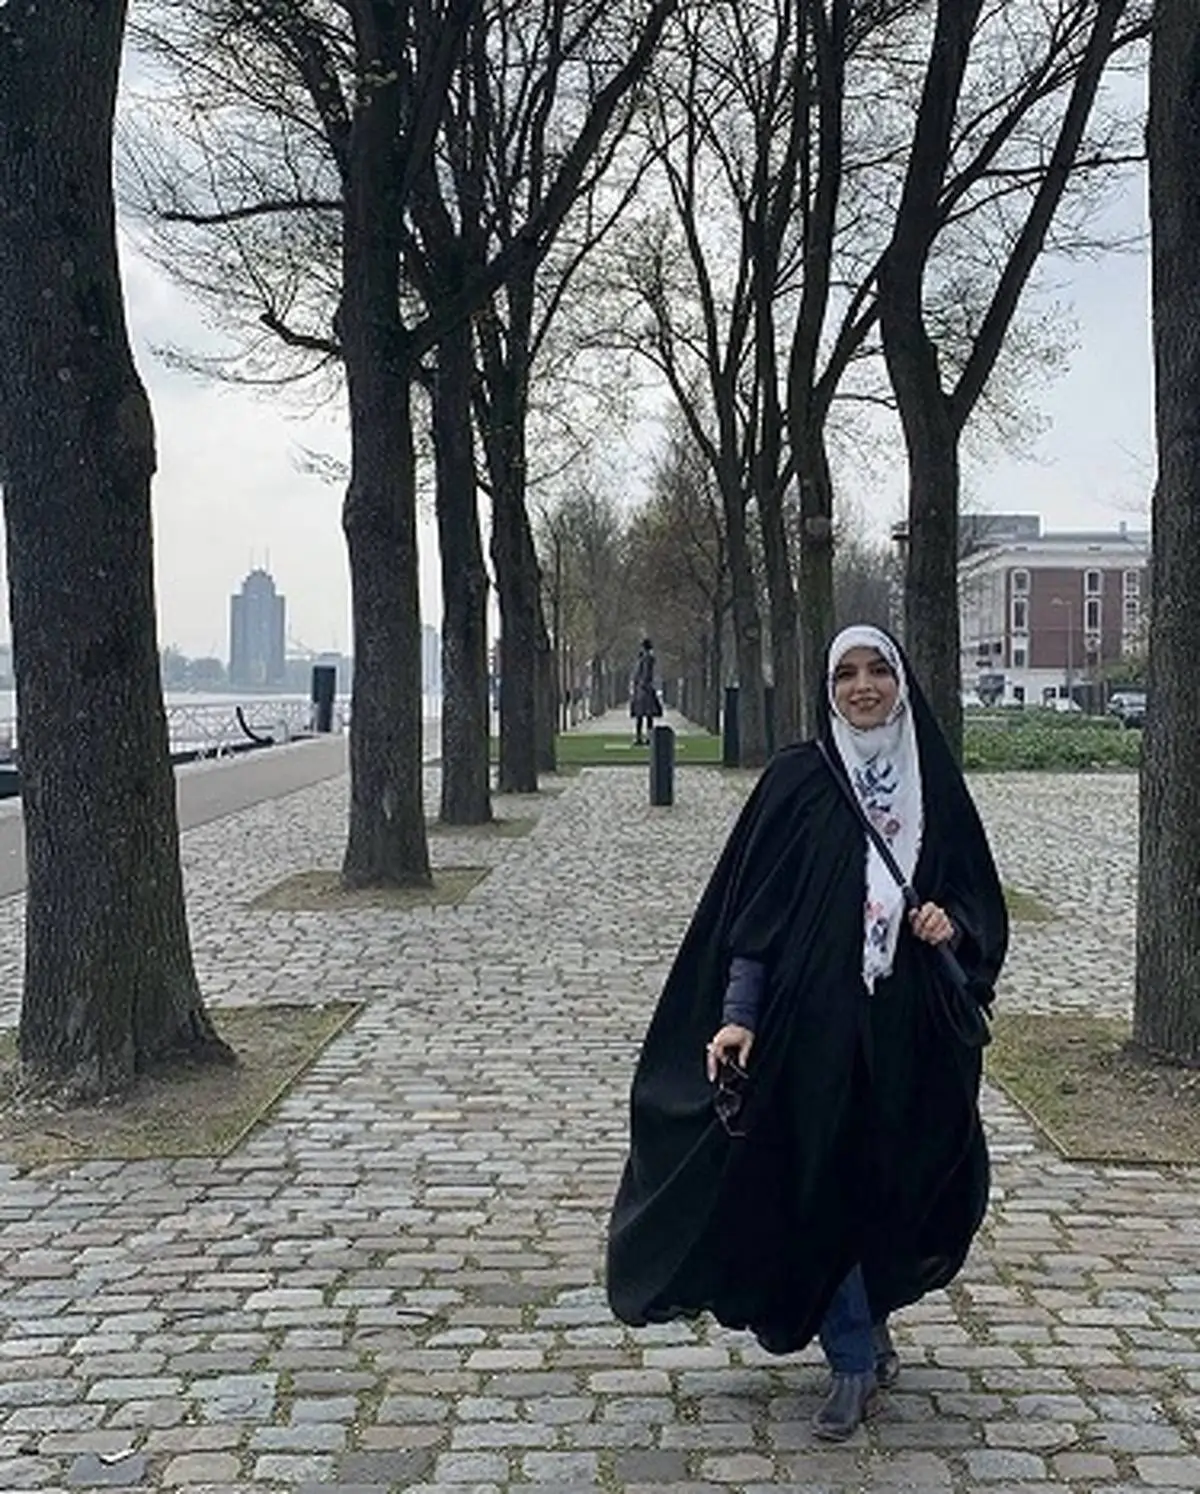 عکس های پوشش “خانم مجری چادری” در خارج پربازدید شد/ عکس